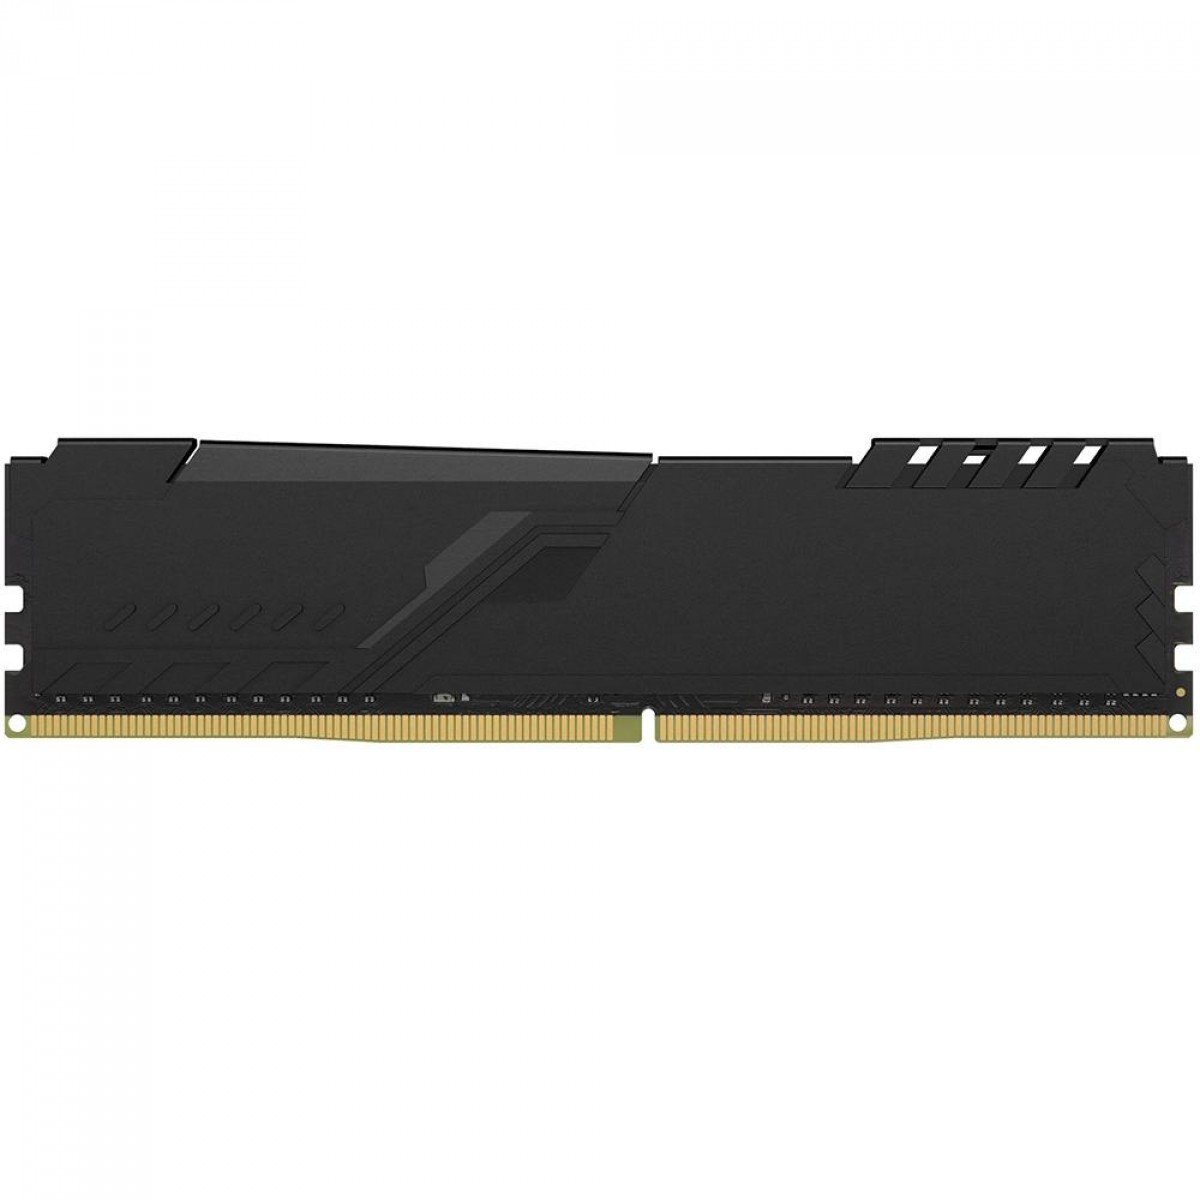 Memória DDR4 HyperX Fury, 16GB, 2400MHz, Black, HX424C15FB4/16